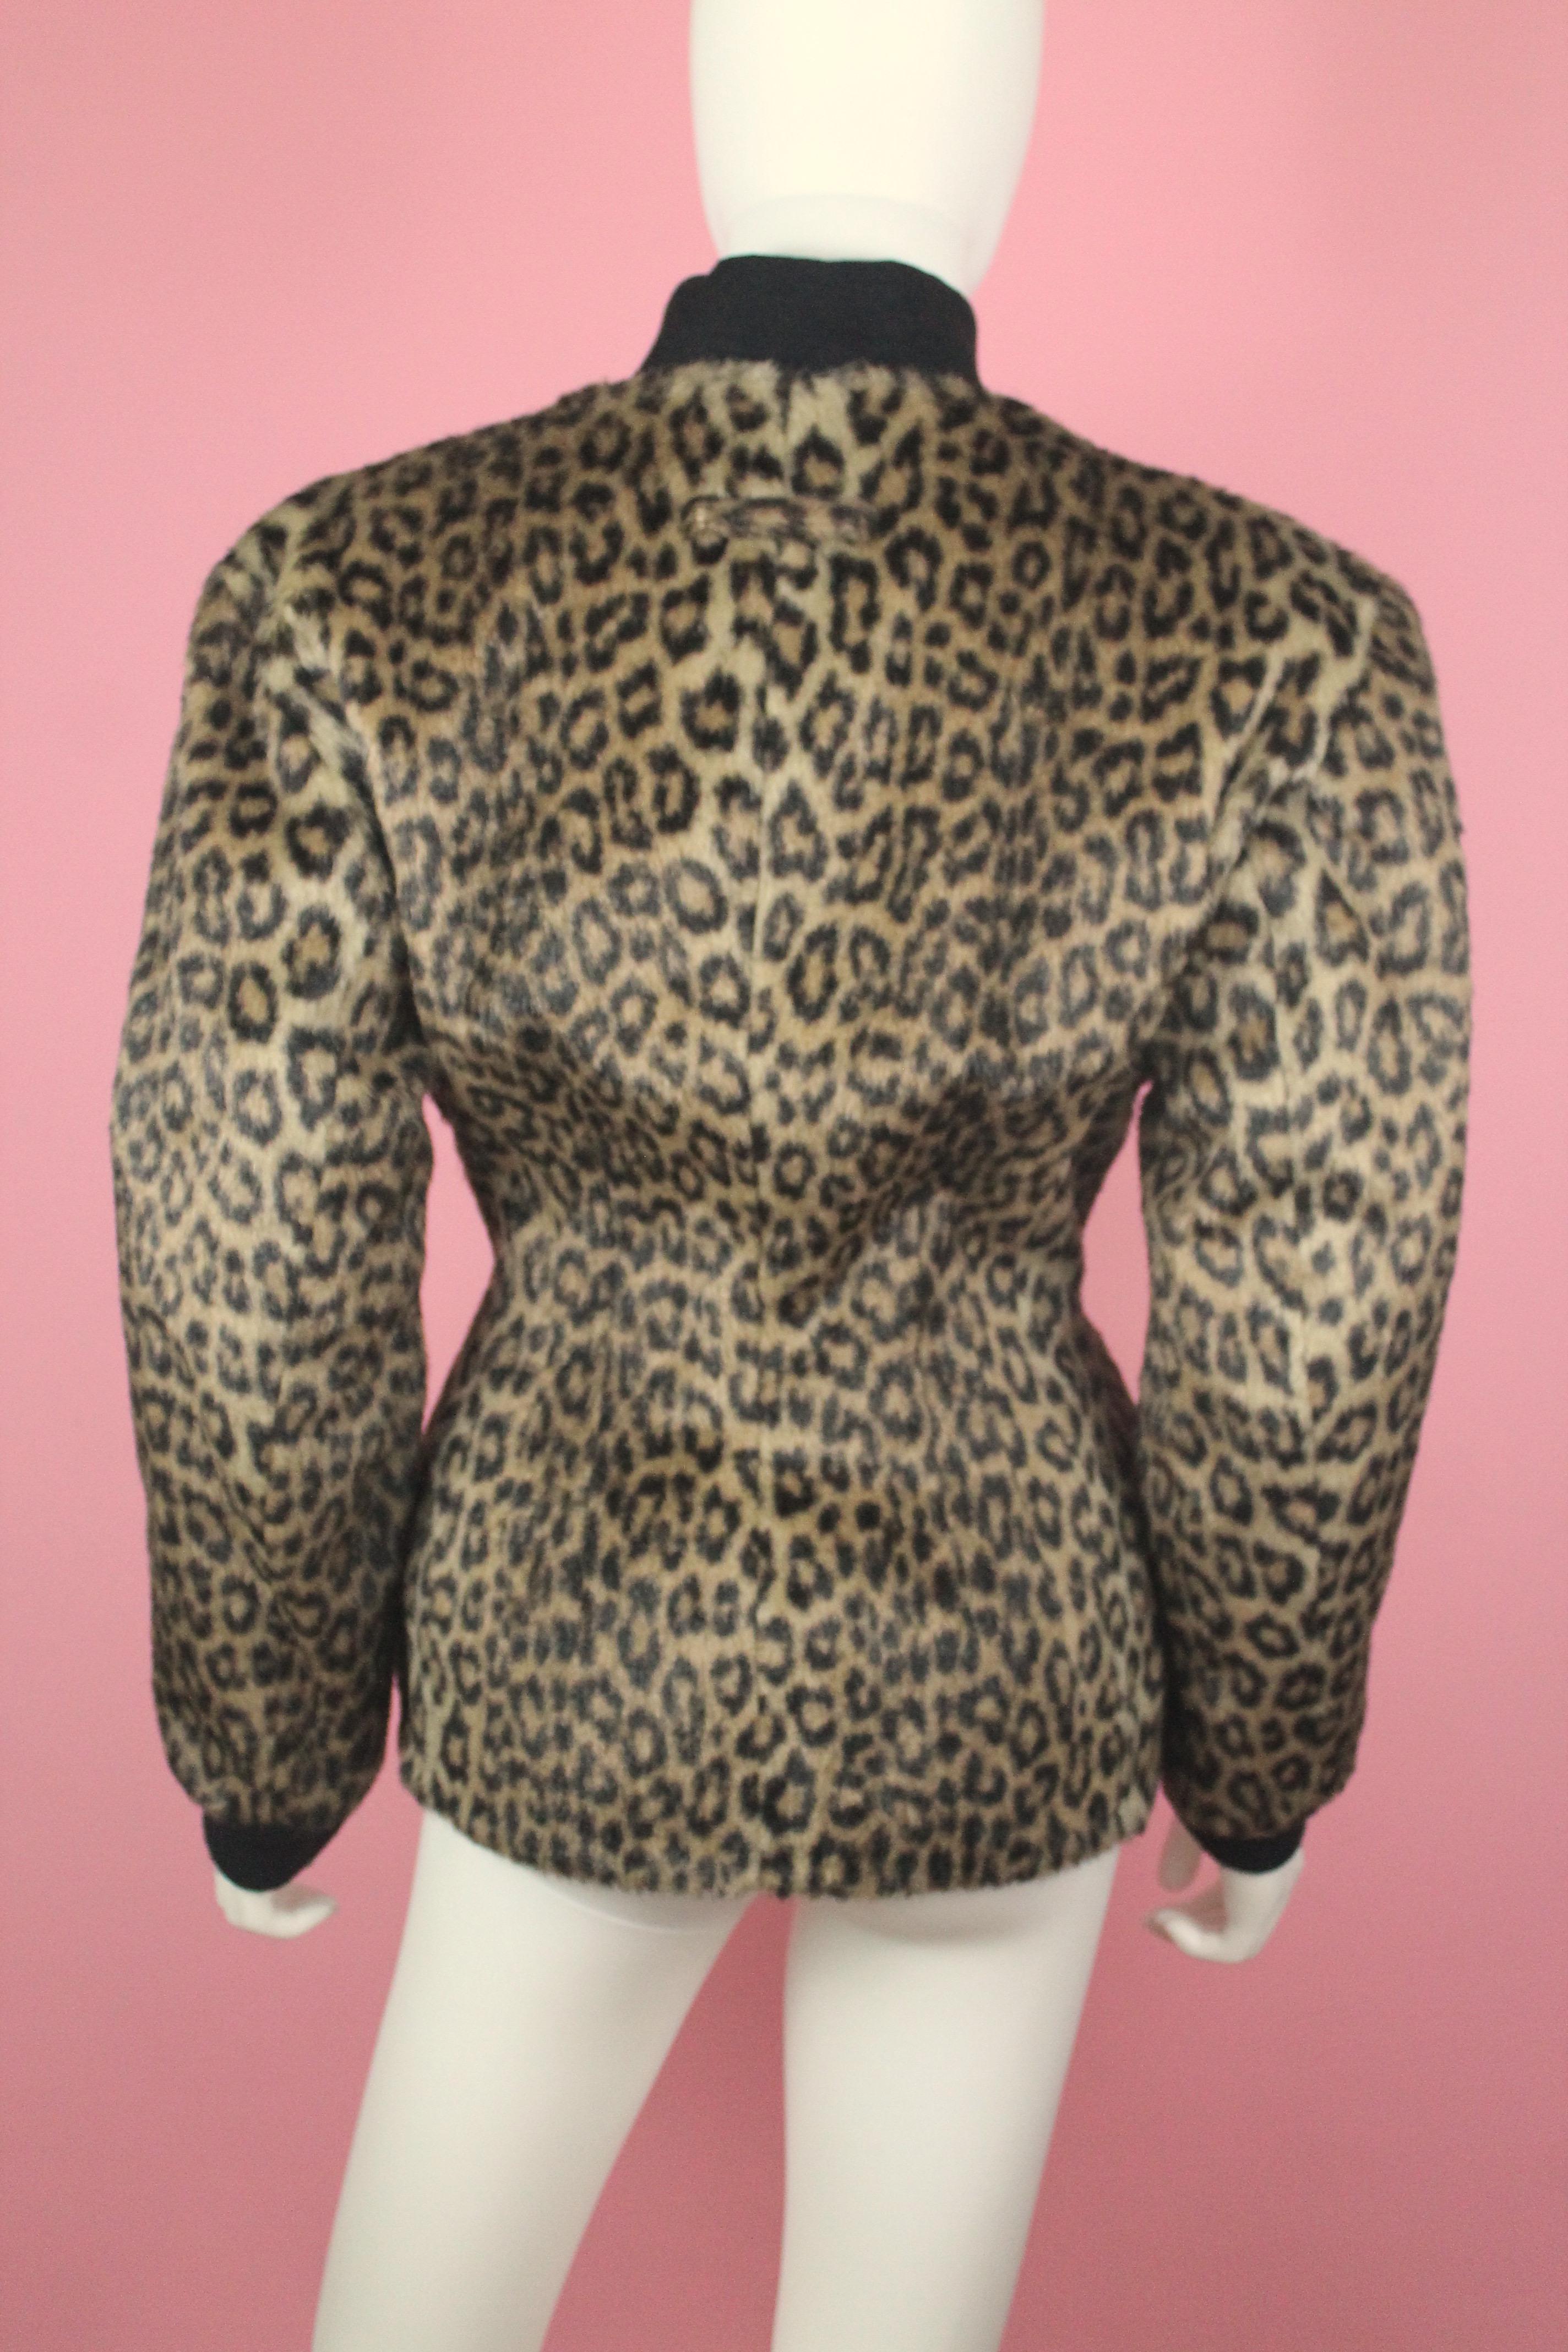 Gray Jean Paul Gauliter Faux Leopard Fur Jacket, c. 1990's, US Size 4